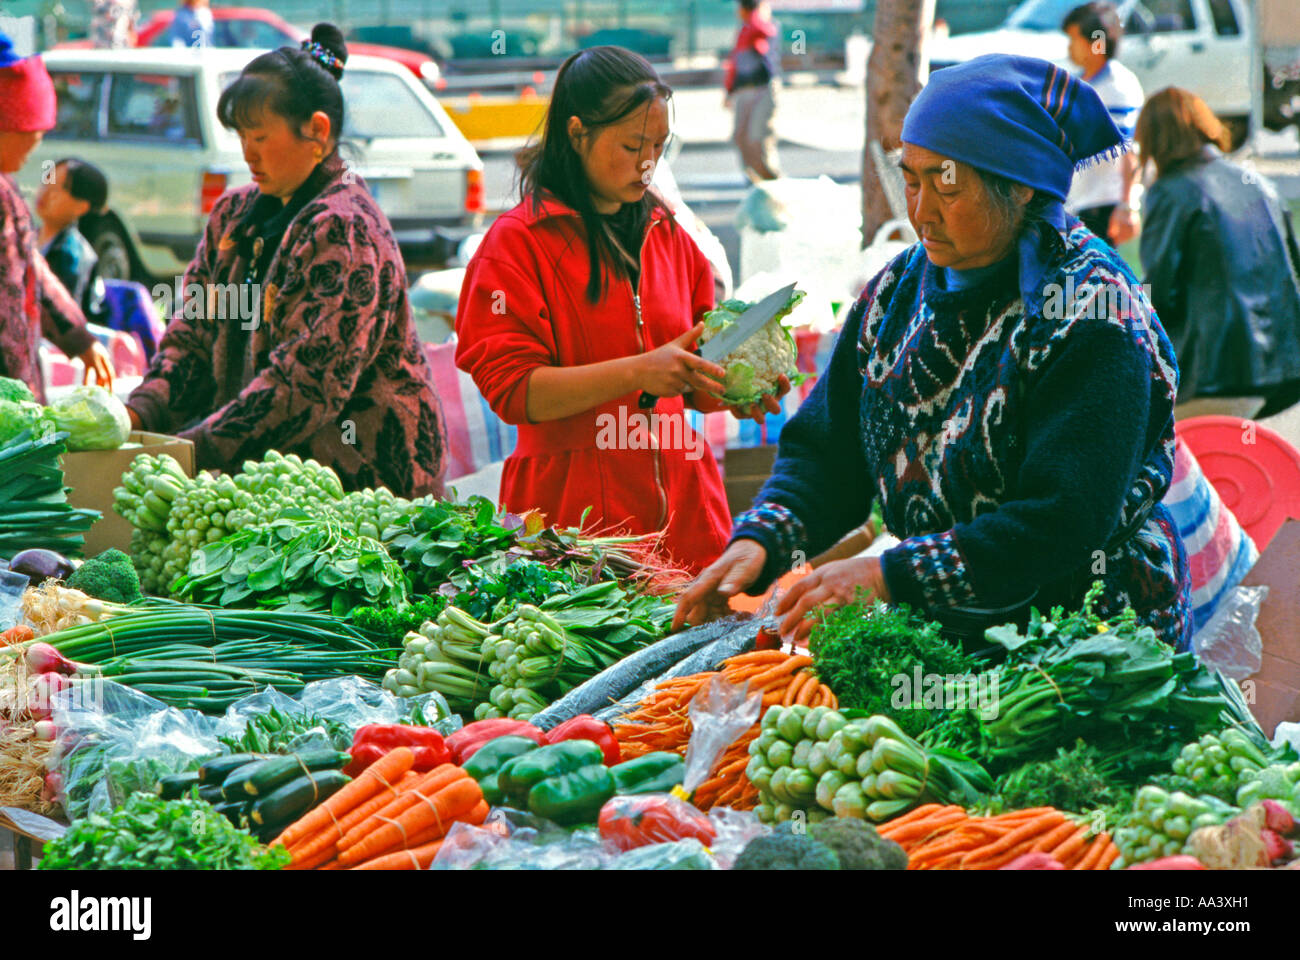 Les maraîchers laotiens hmong présentant leurs produits au marché Salamanca Hobart en Tasmanie, Australie Banque D'Images